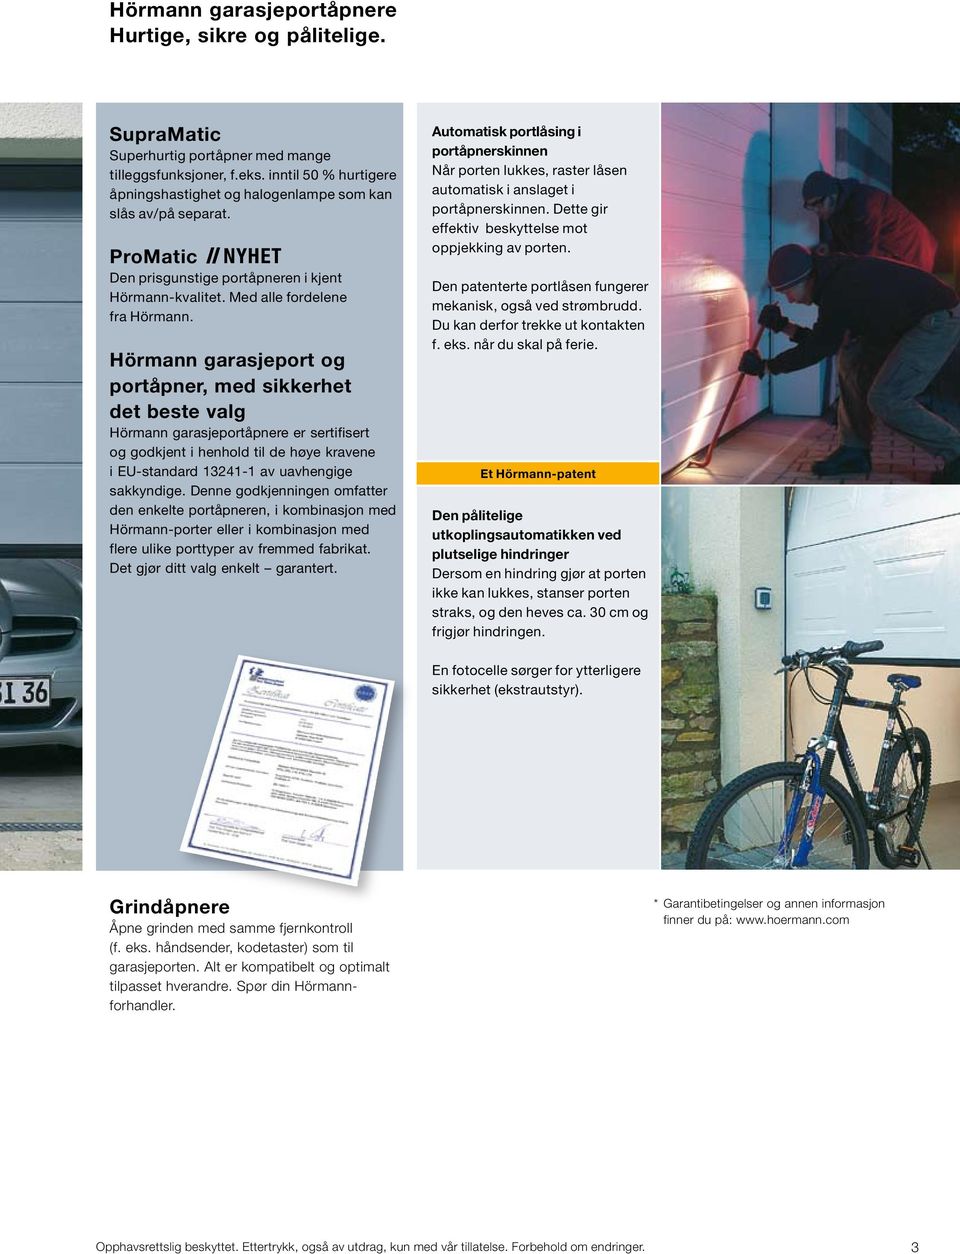 Hörmann garasjeport og portåpner, med sikkerhet det beste valg Hörmann garasjeportåpnere er sertifisert og godkjent i henhold til de høye kravene i EU-standard 13241-1 av uavhengige sakkyndige.